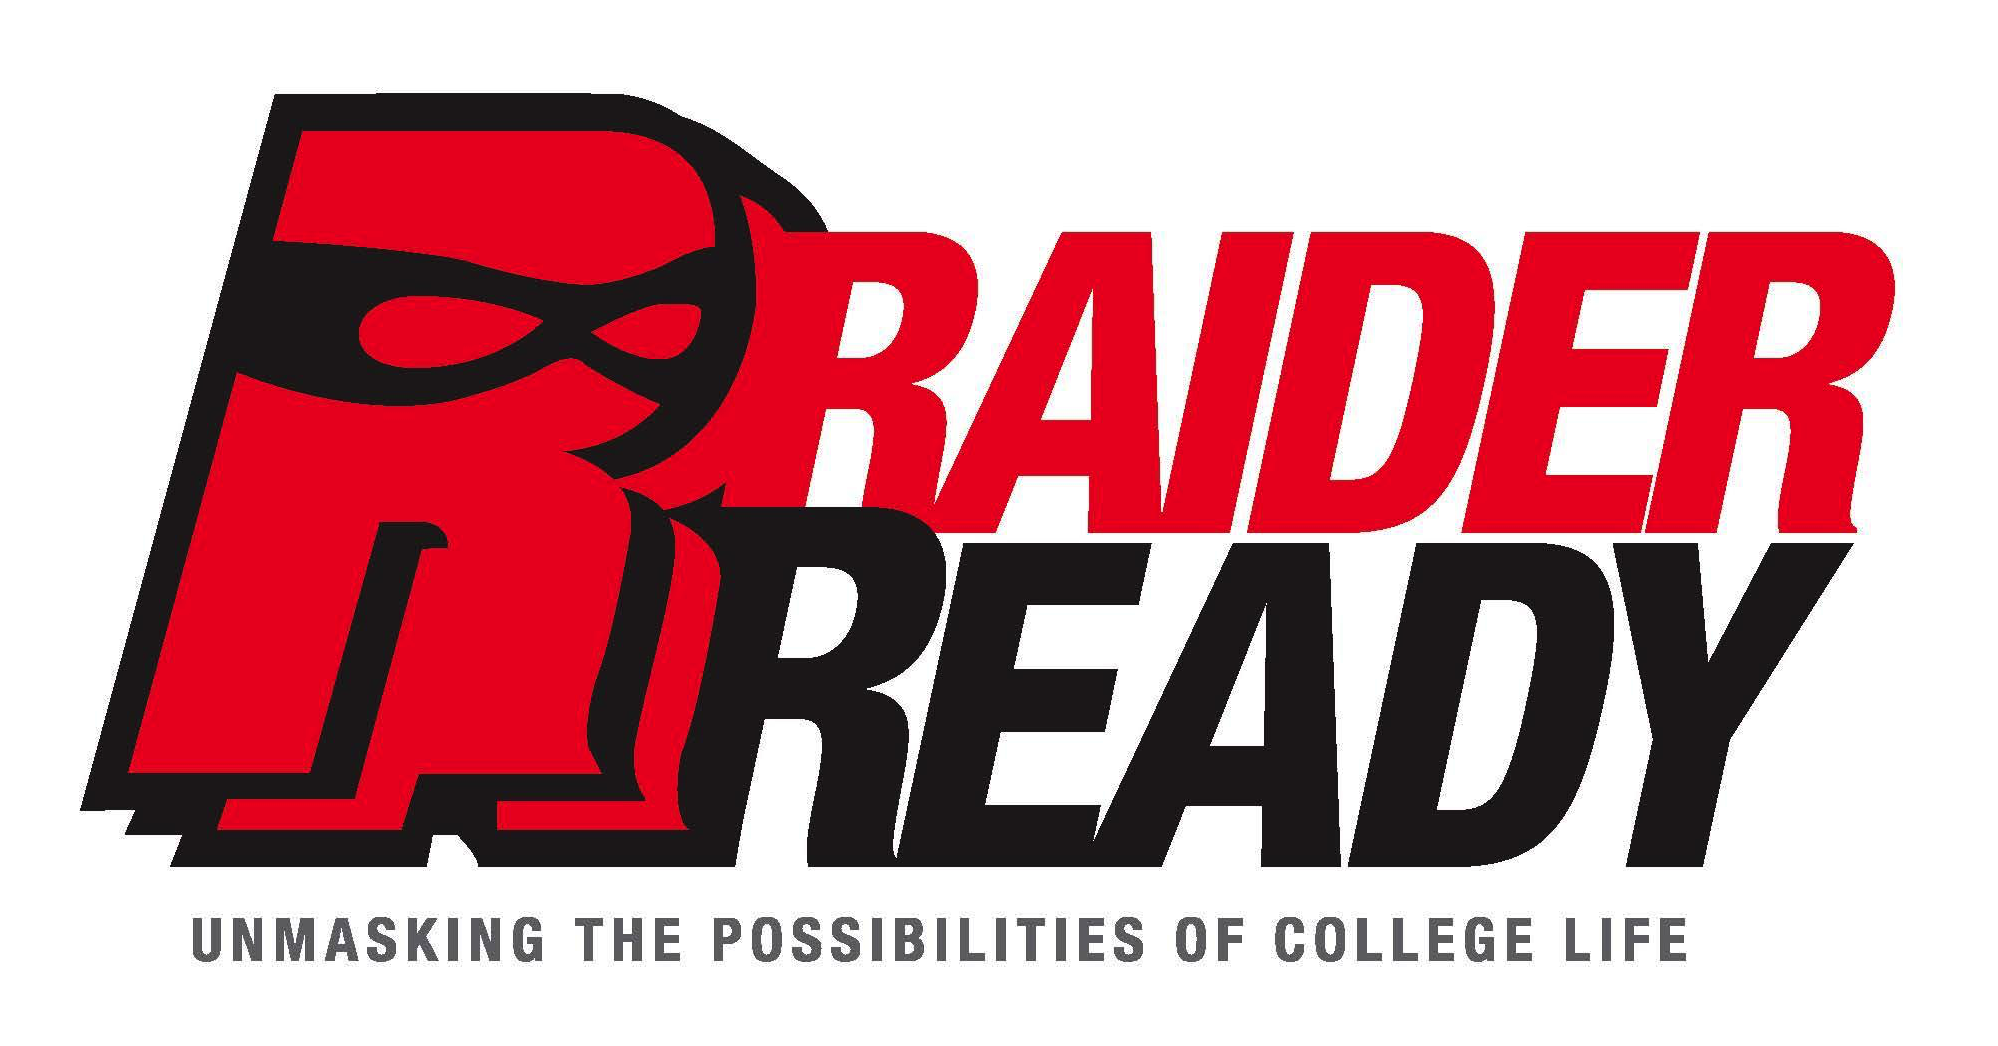 Raider Ready Logo